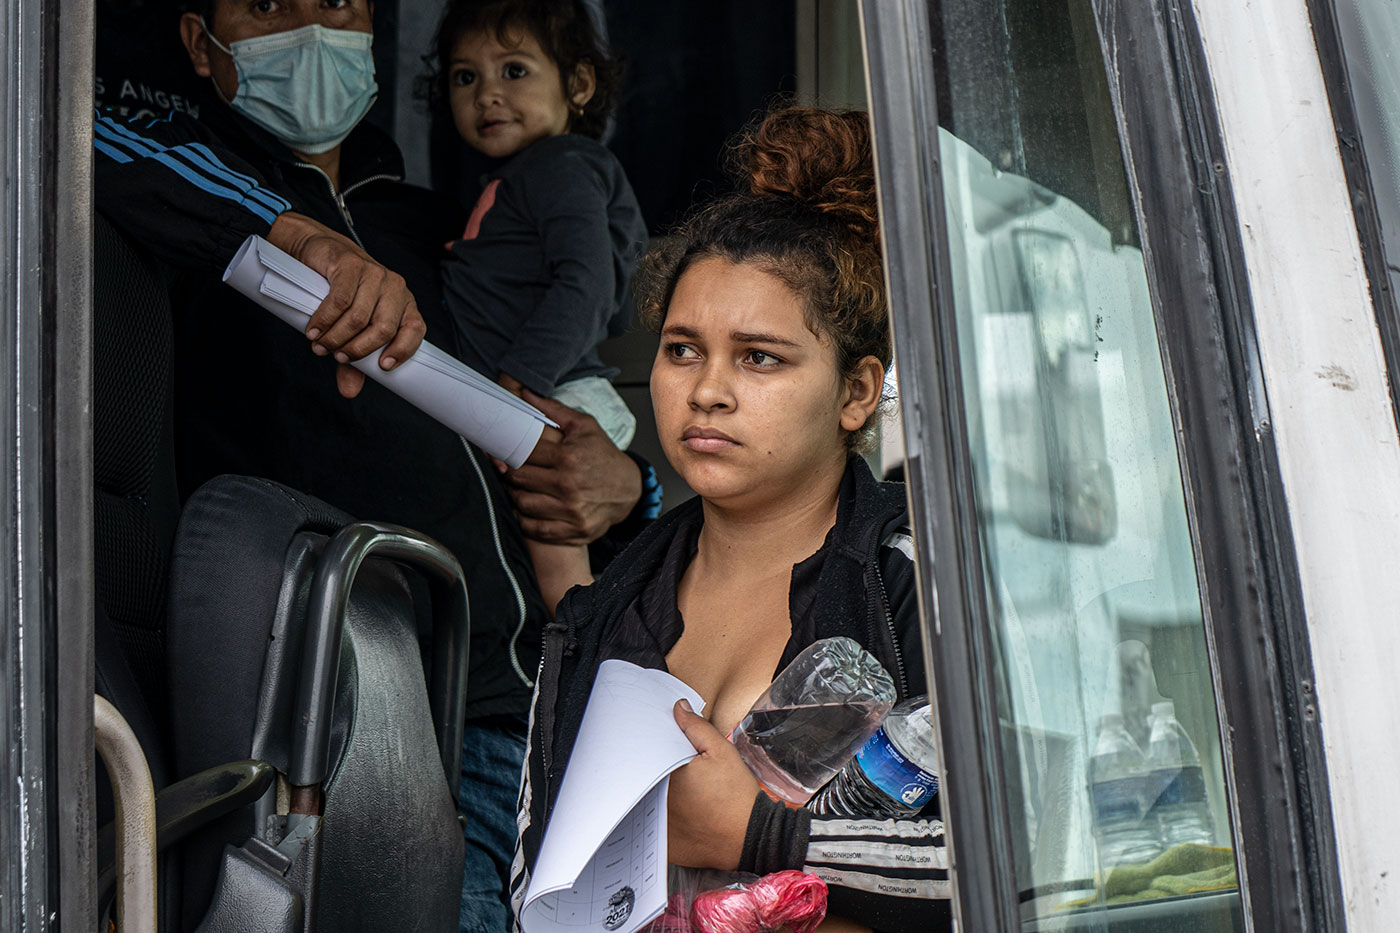 Tapachula: “México hace el trabajo sucio a Estados Unidos”: las deportaciones exprés en la frontera sur